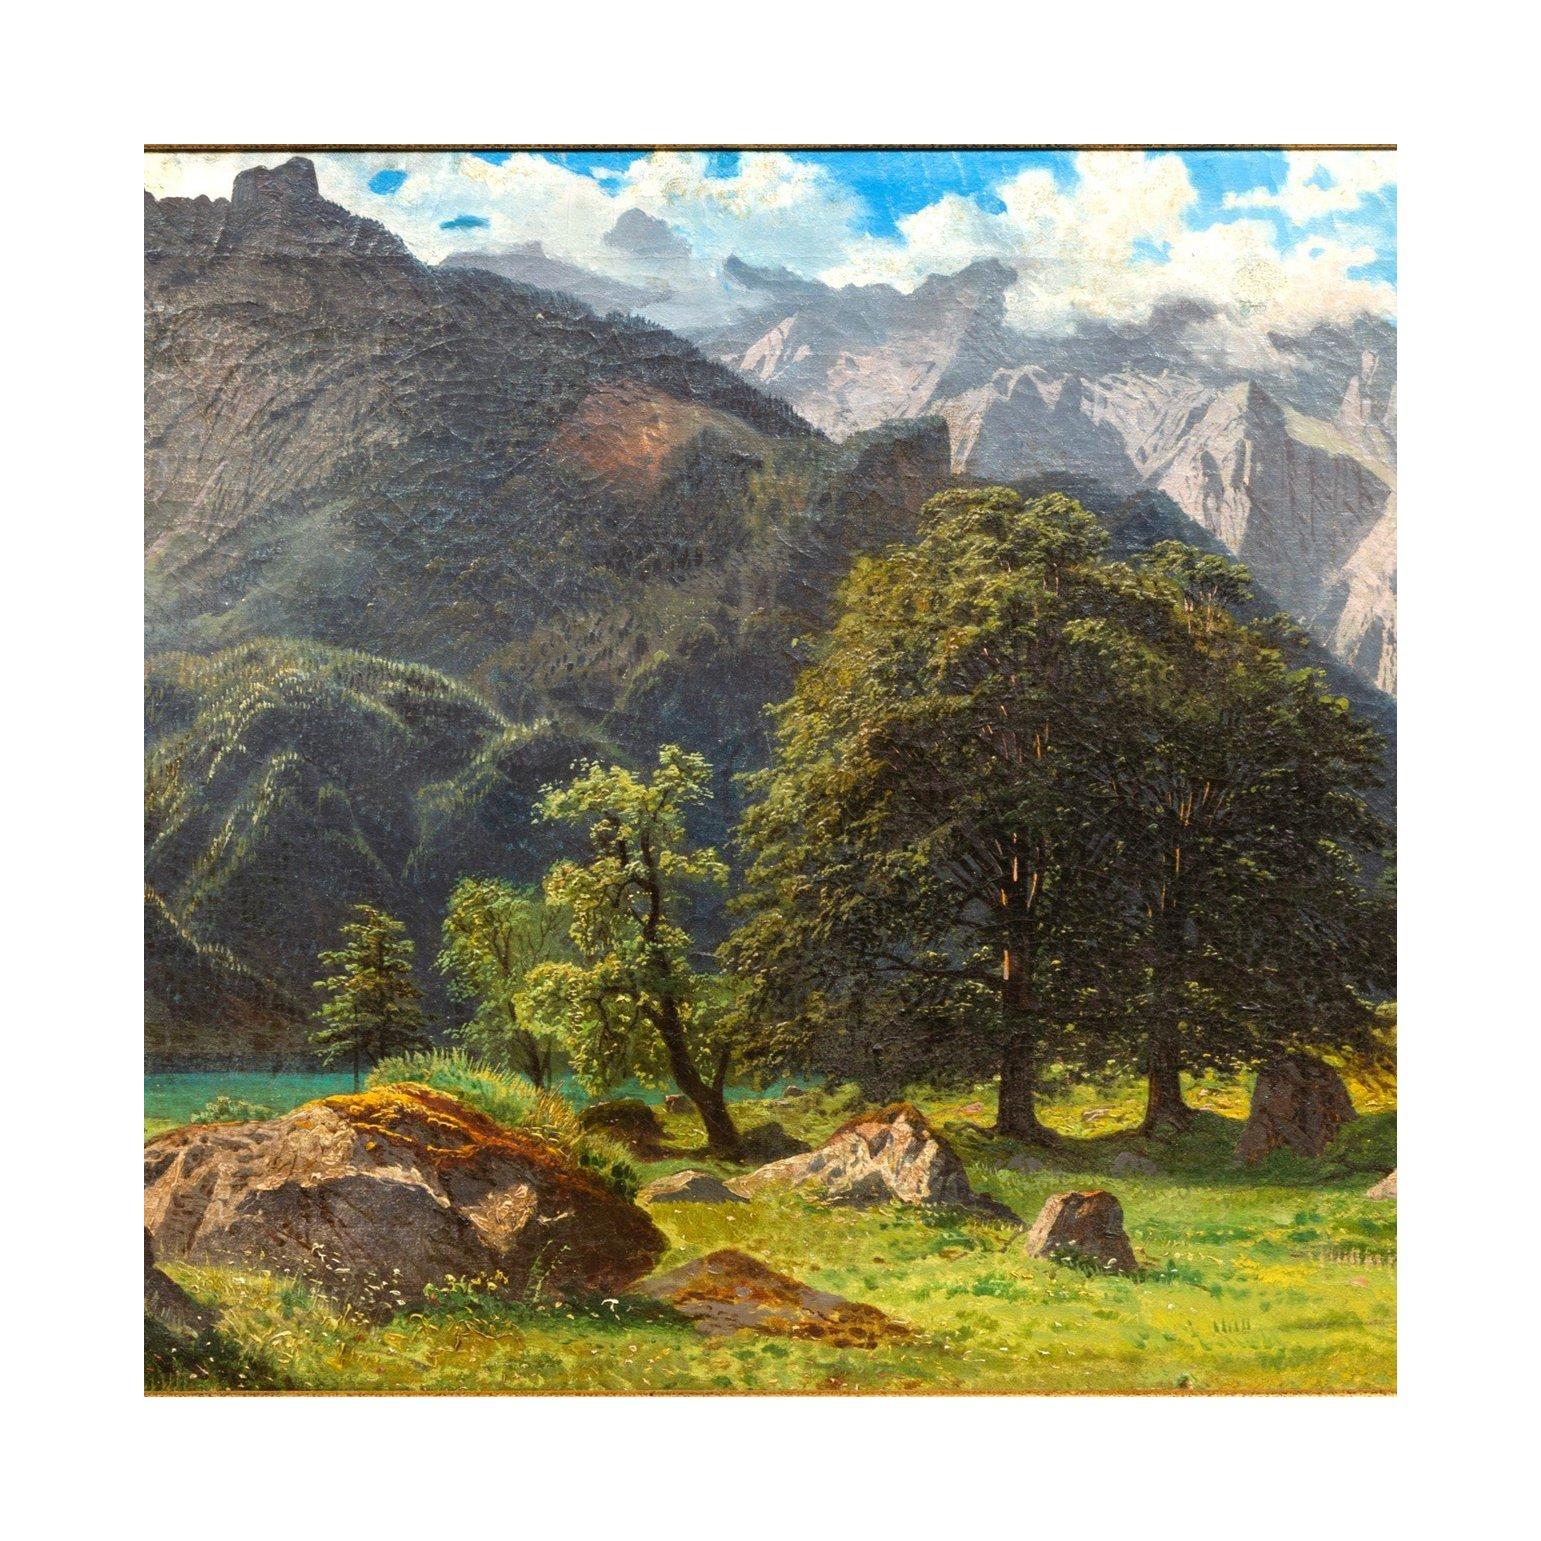 Le Watsman, une vue peinte entre Obersee et Koningsee, Haute-Bavière. Étude peinte en 1856 par François Roffiaen.

François Roffiaen (1820-1898) : Biographie

La famille paternelle de François Roffiaen est d'origine modeste. Les hommes étaient